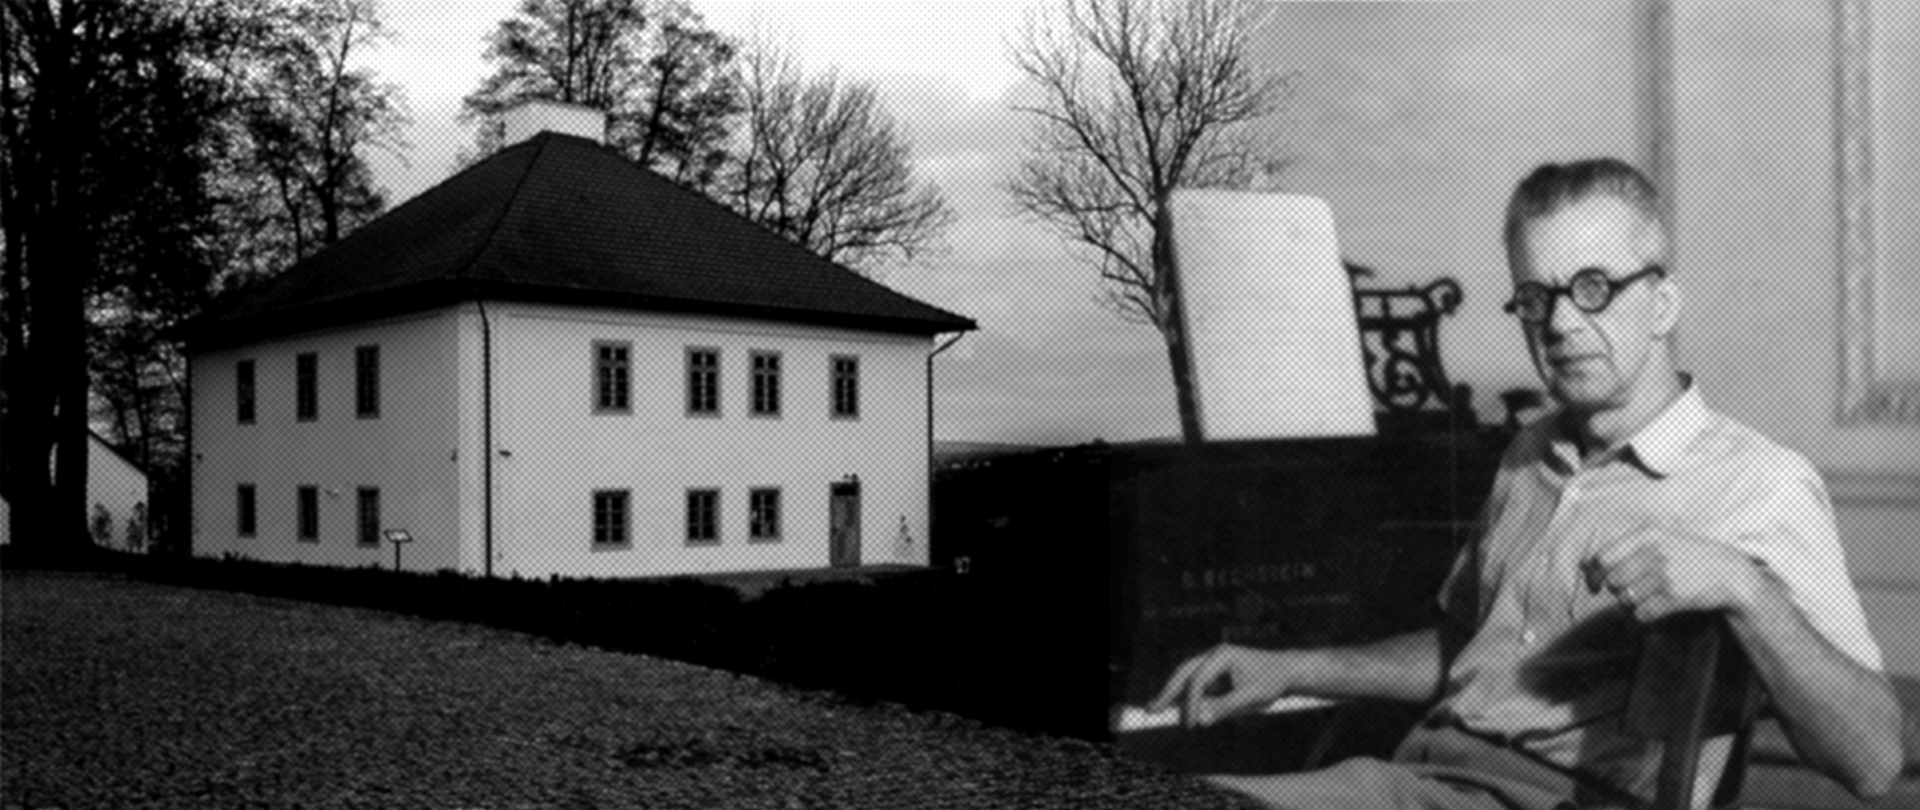 Baner czarnobiały składa się z kolażu dwóch zdjęć. Z lewej strony ujęcie Oficyny przy Zespole Parkowo-Dworskim i Folwarcznym w Wiśniowej. Z prawej zdjęcie Zygmunta Mycielskiego, siedzącego przy pianinie.